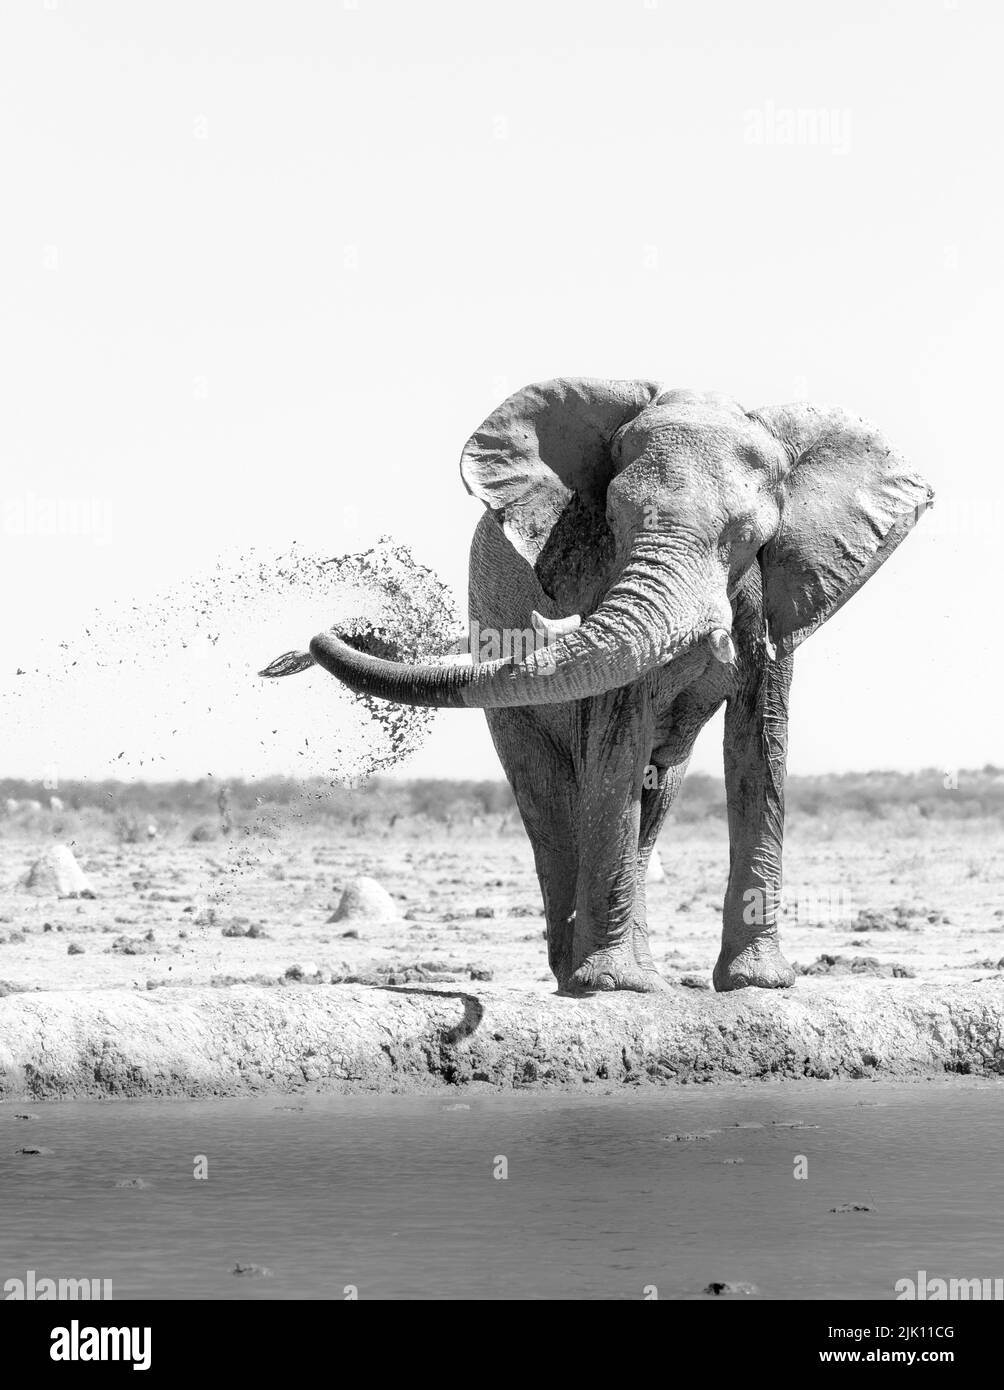 Elephant spruzza fango sul suo corpo, isolato in un foro di irrigazione. Nxai Pan, Makgadikgadi Salt Pans, Botswana, Africa Foto Stock